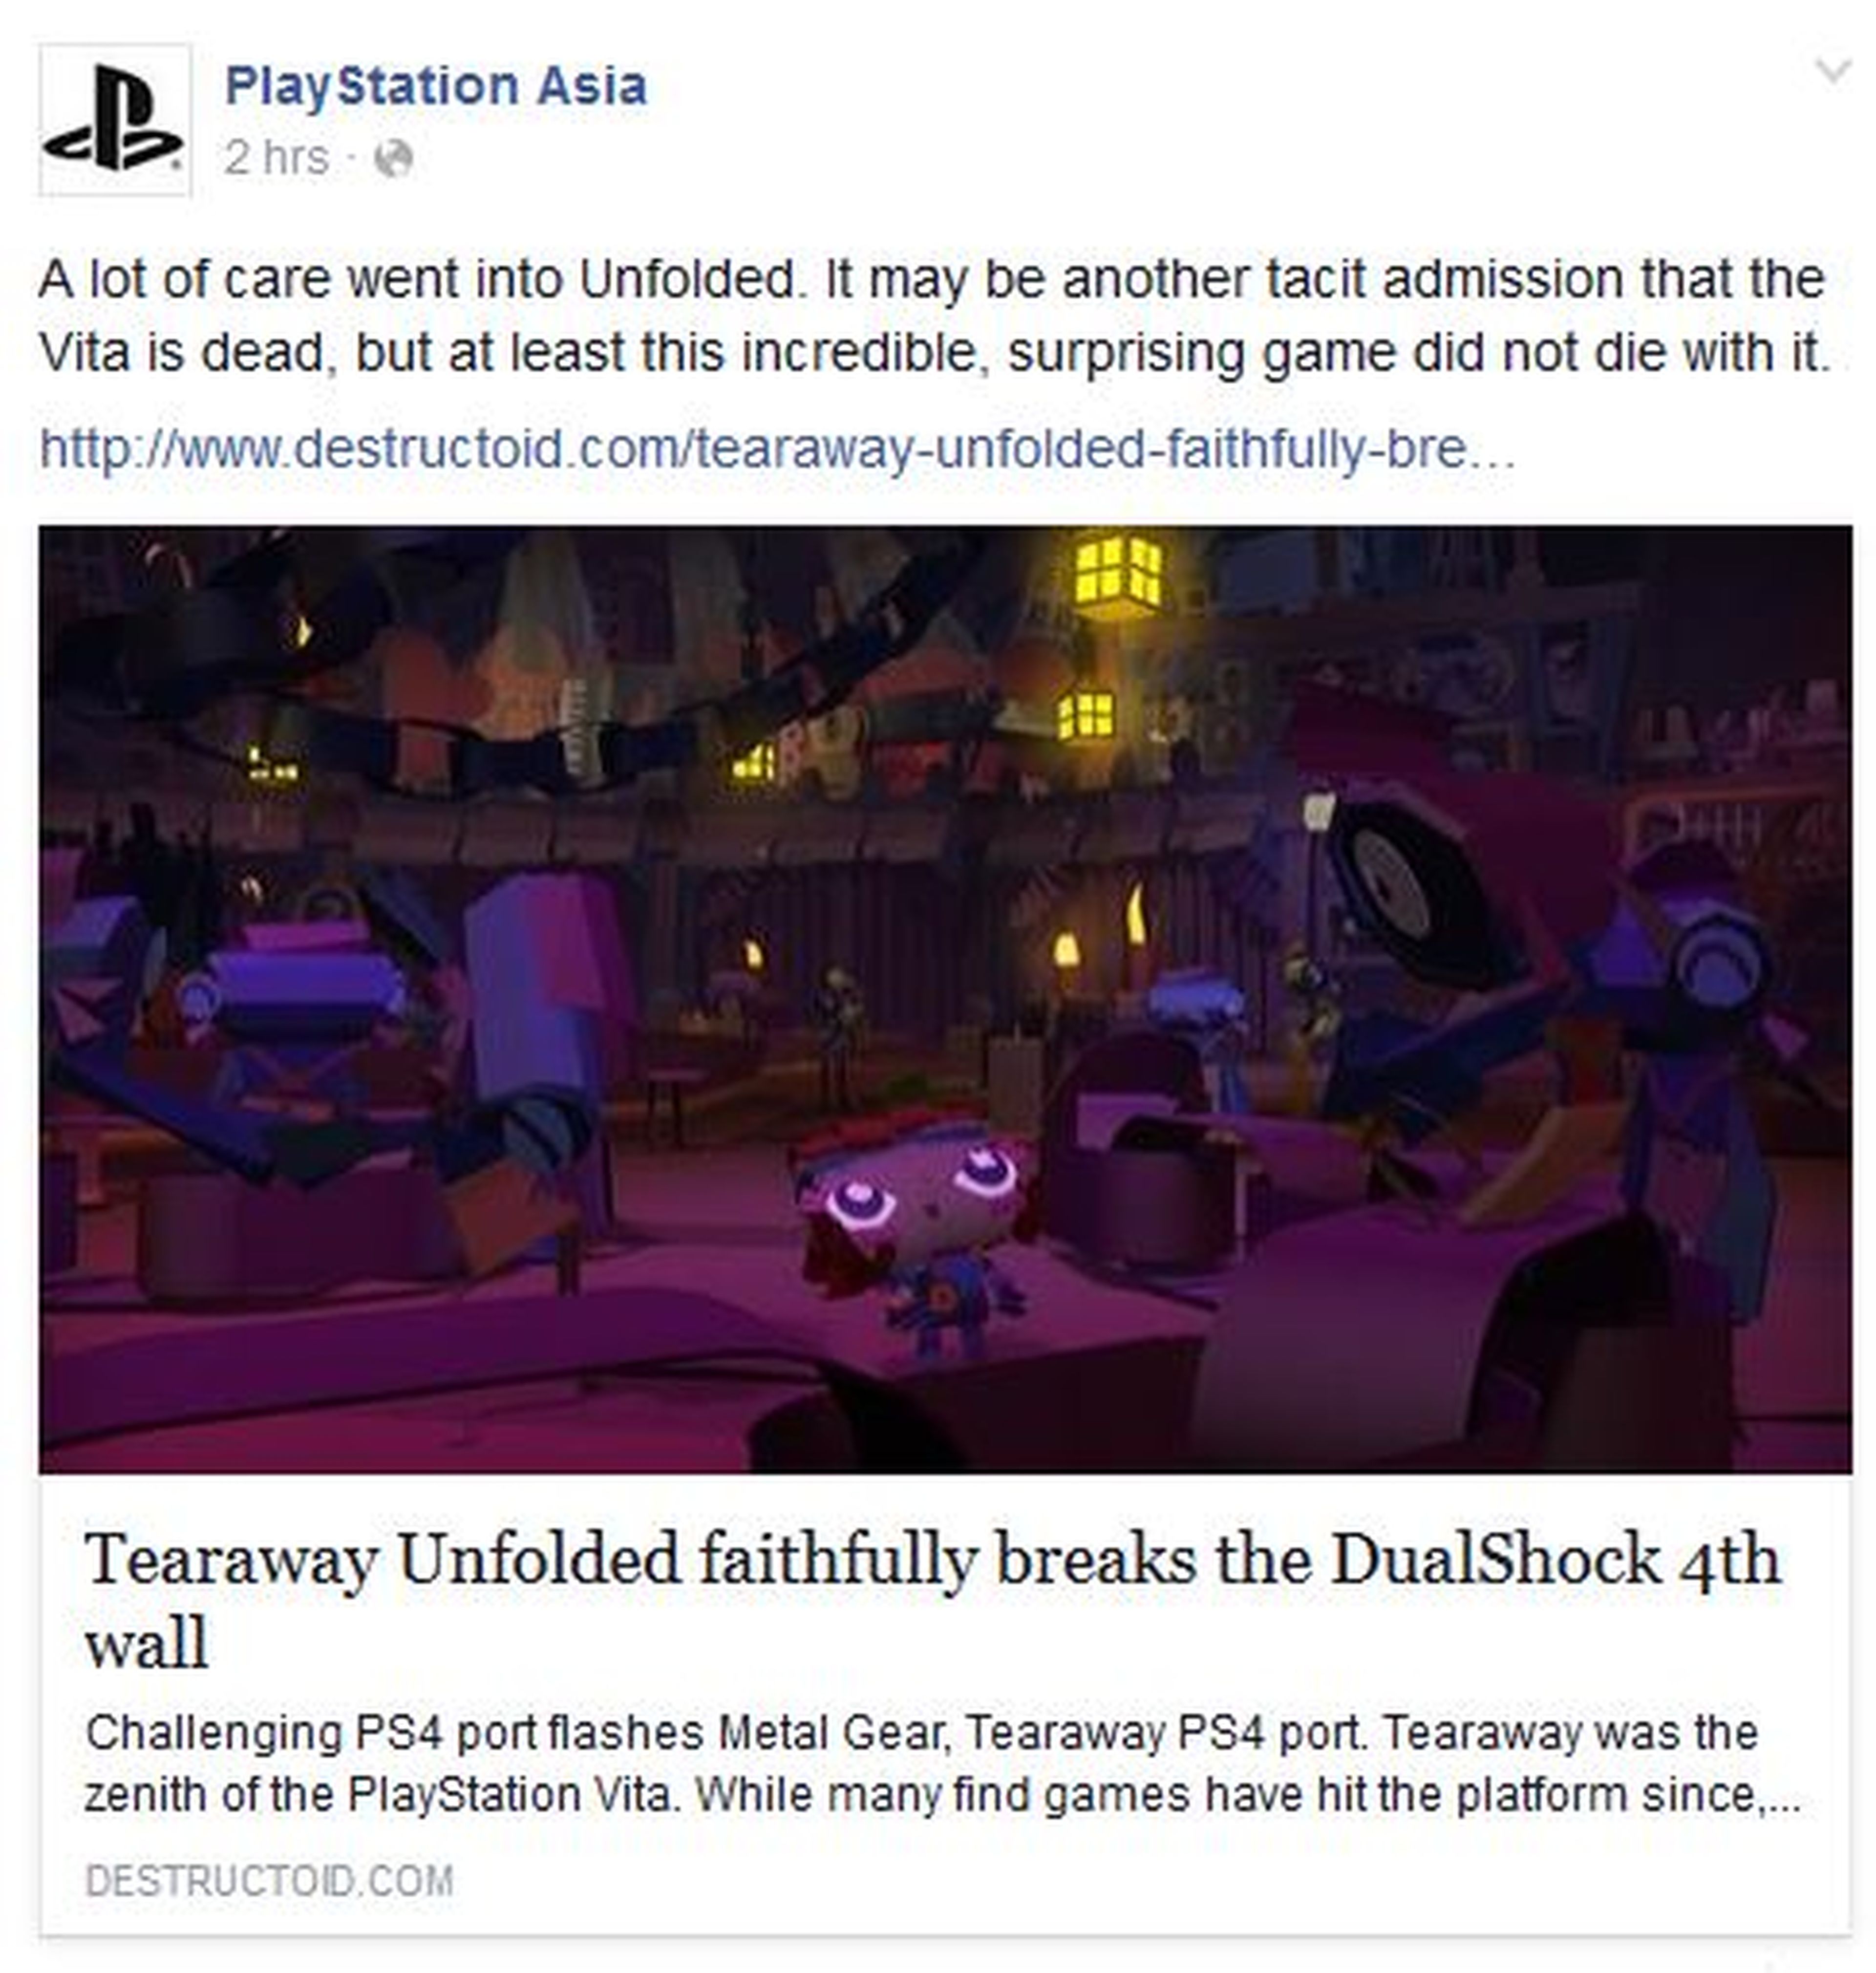 Un comentario sobre PSVita de Playstation Asia en Facebook crea mucha polémica